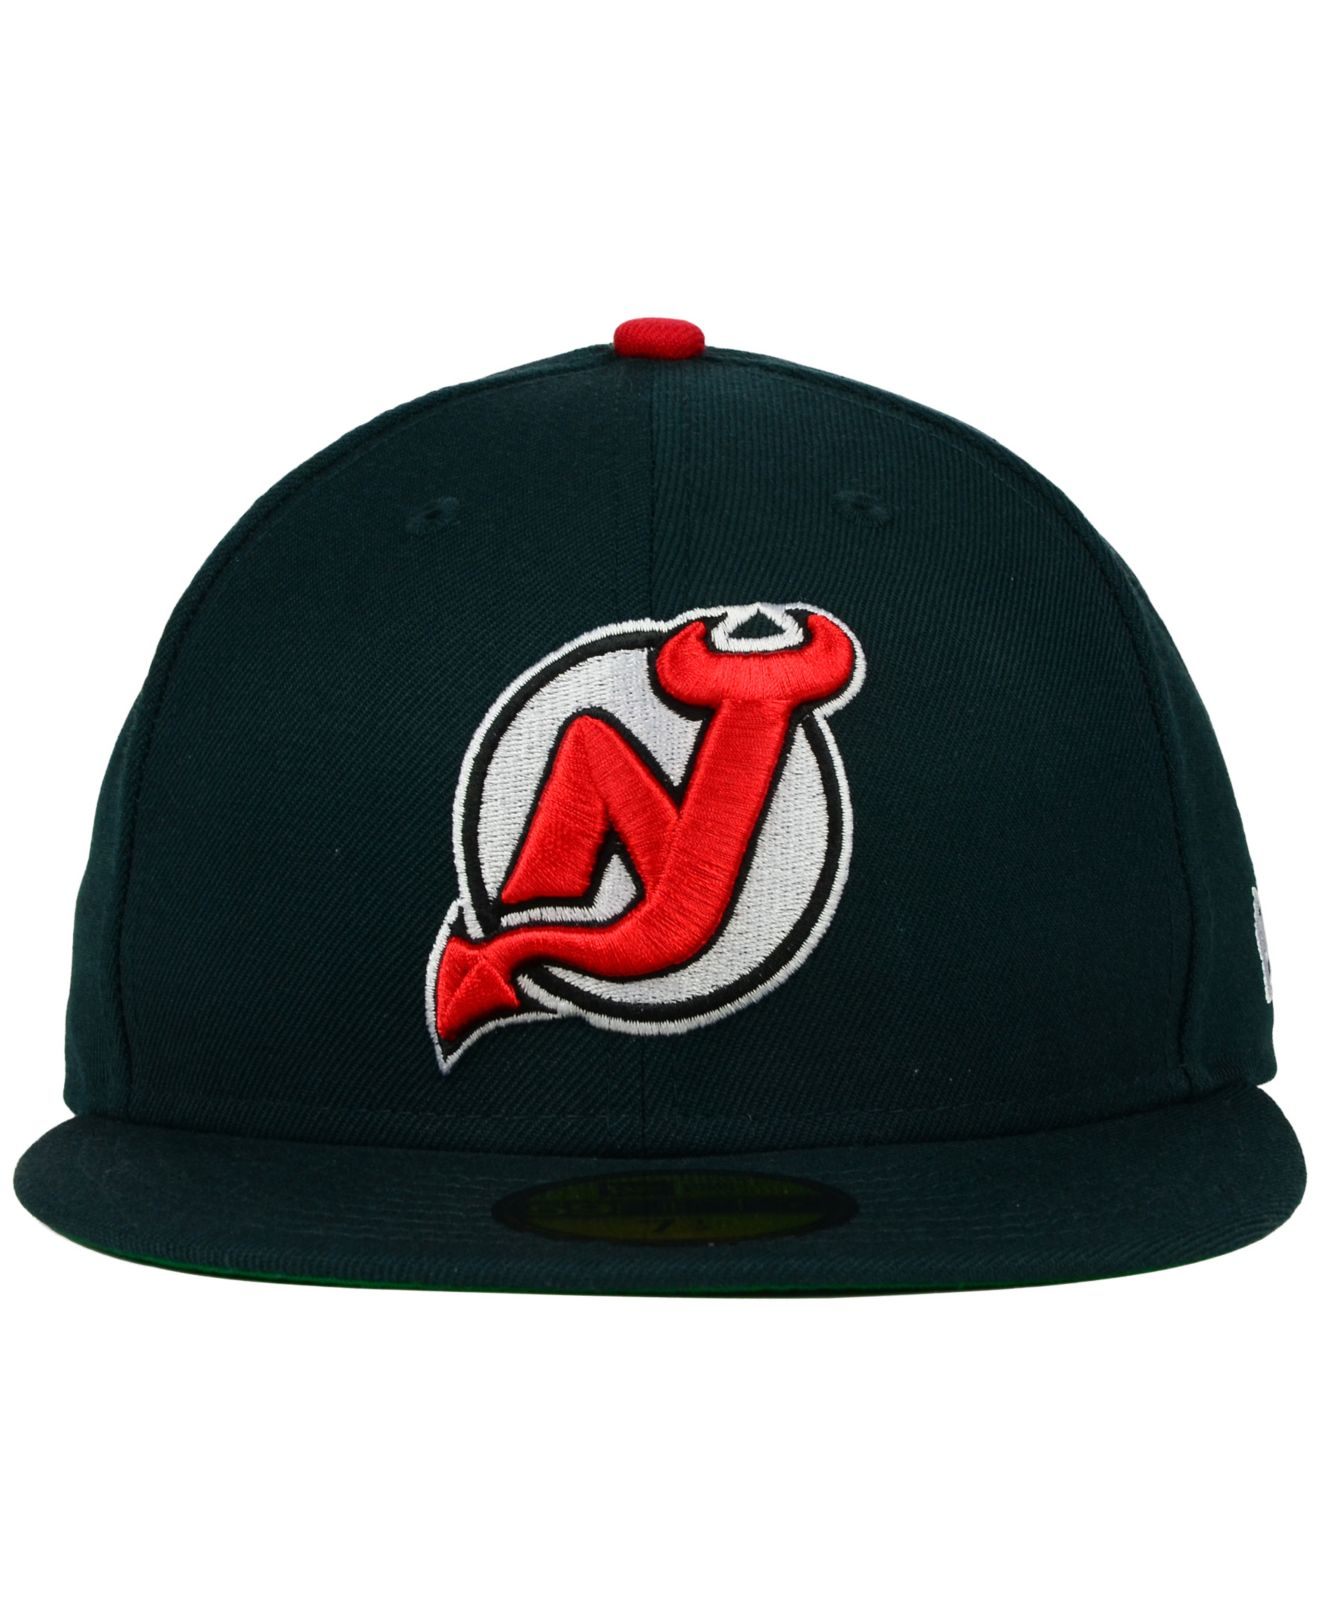 New Jersey Devils Hat for Sale in Waretown, NJ - OfferUp